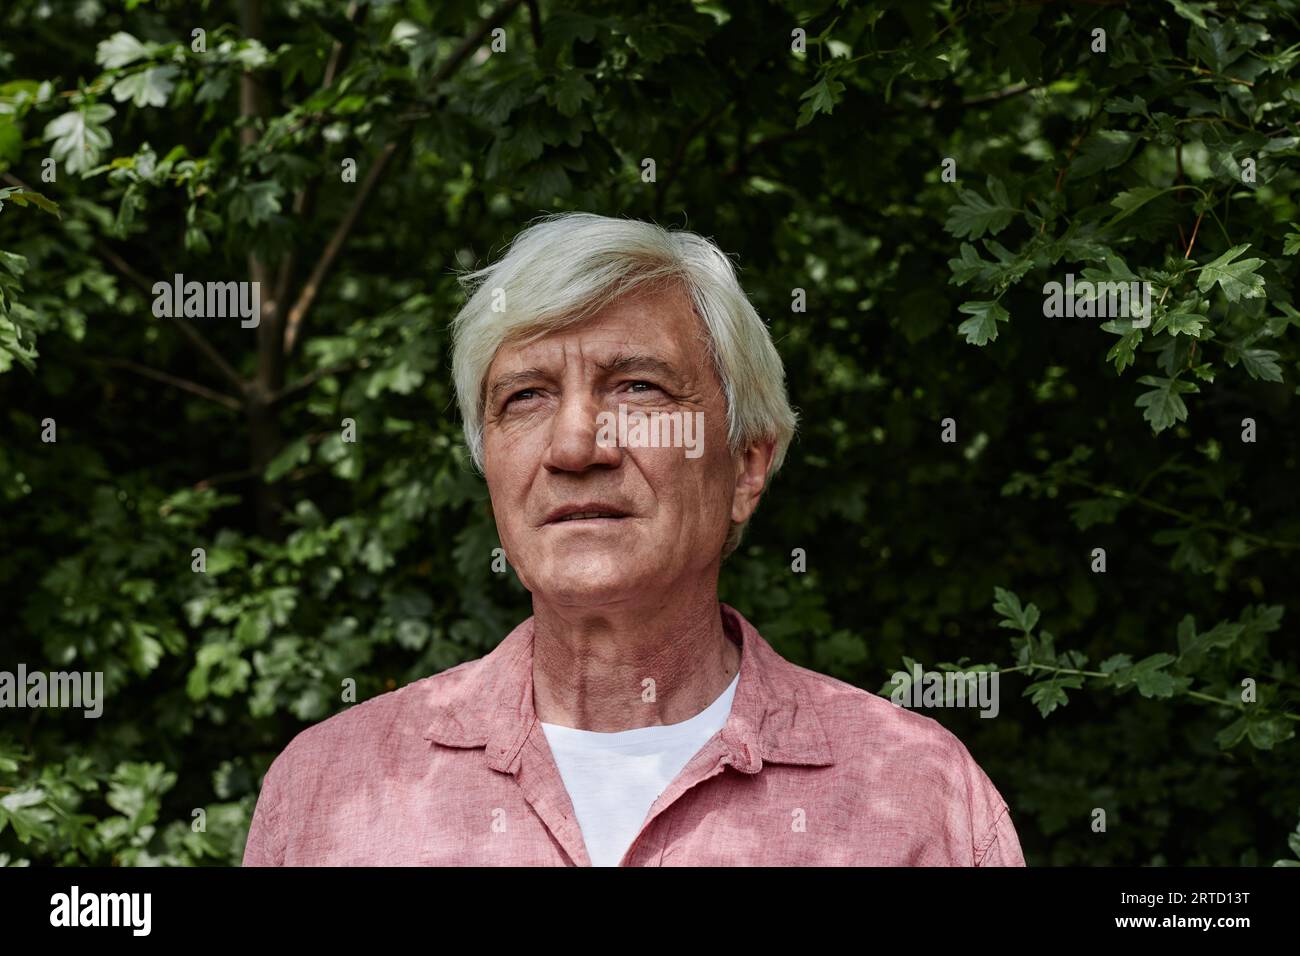 Porträt von vorne von einem älteren Mann, der draußen gegen grüne Blätter schaut Stockfoto